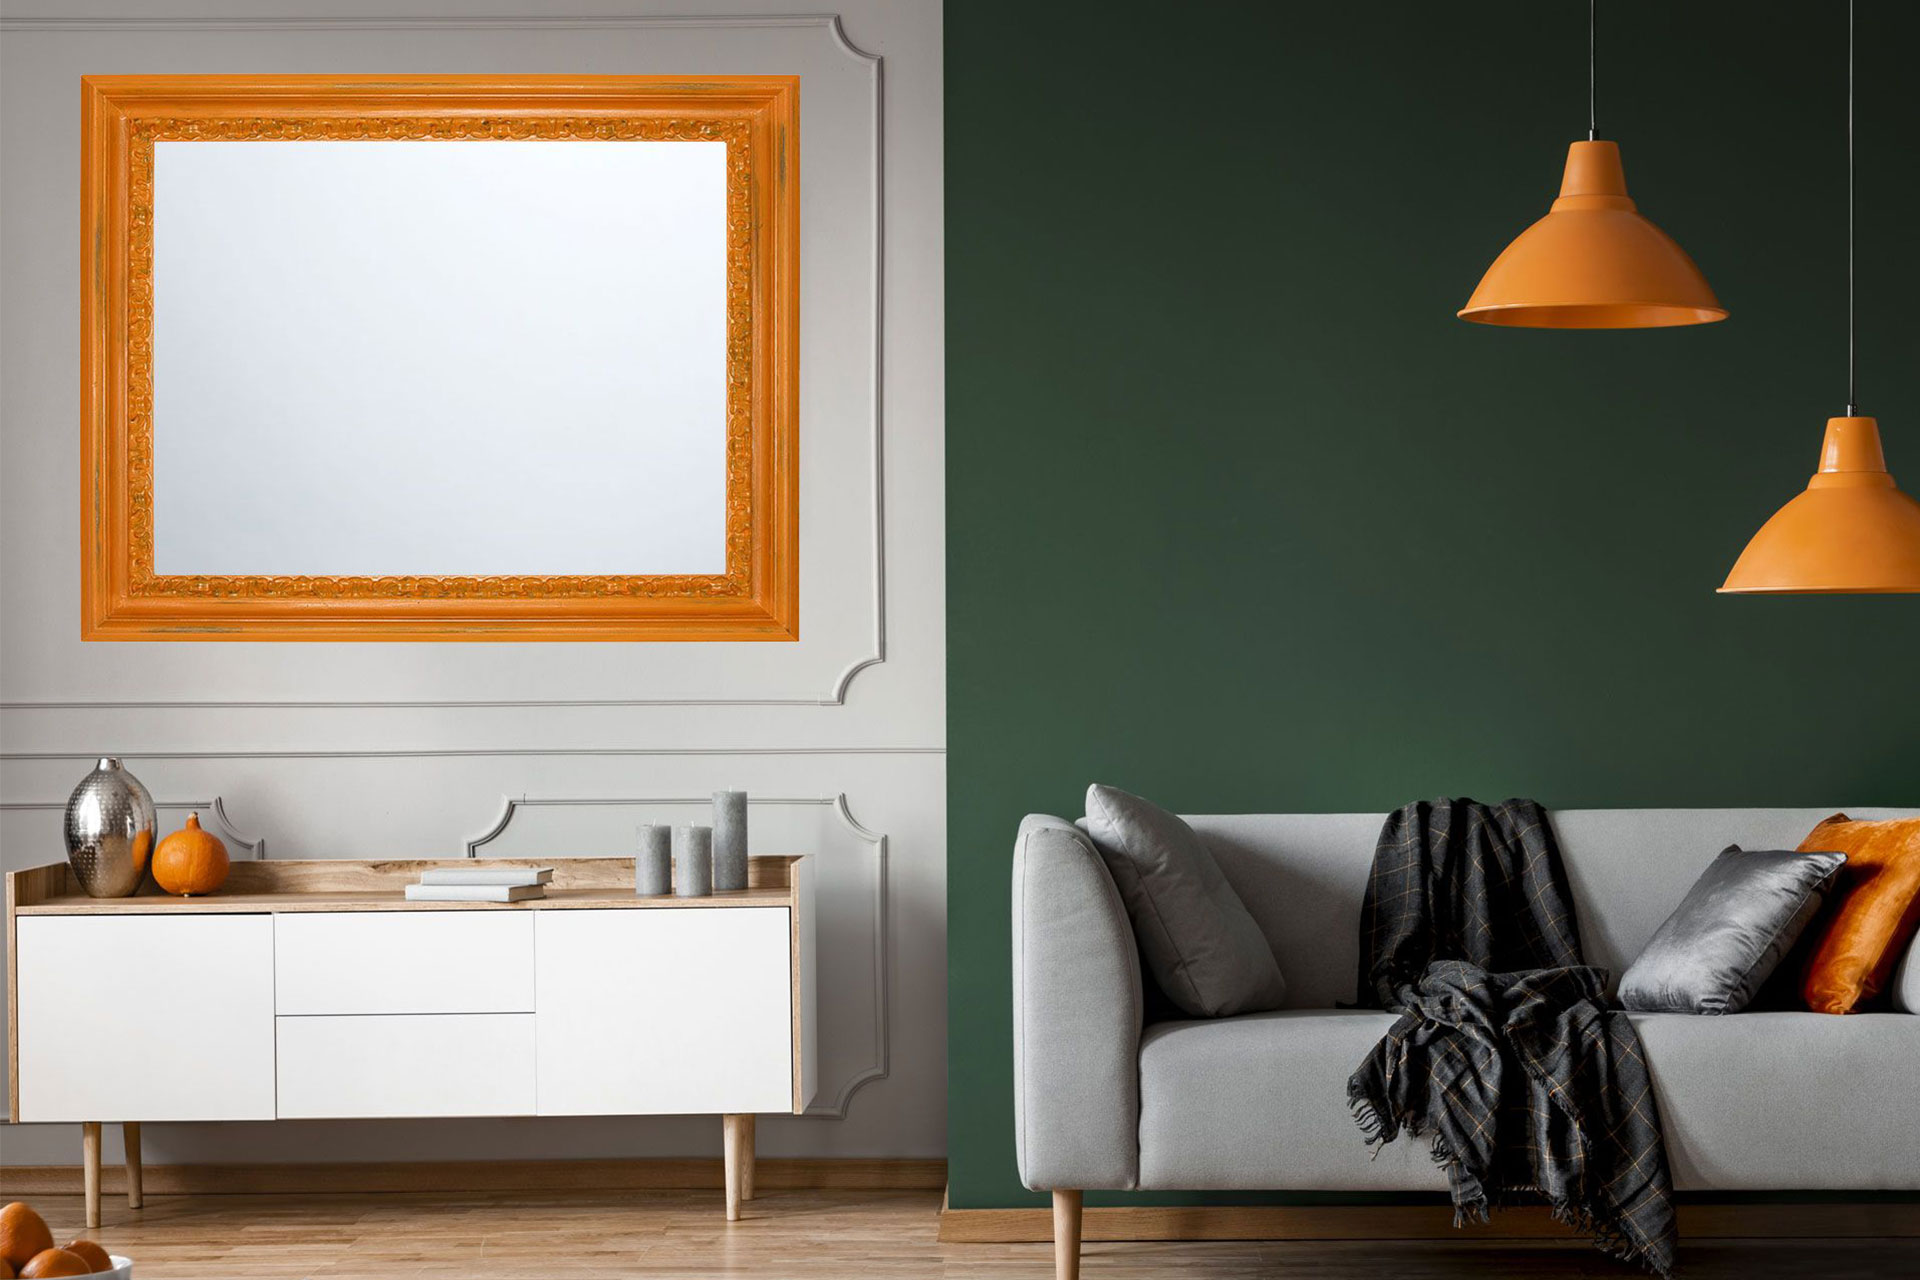 Wandspiegel Modell Metz, Spiegel: Facettenspiegel, Shabby-Chic Style, Design/Farbe:  Braun/Orange, Raum: Flur, Innenbereich, Schlafzimmer, Wohnzimmer, Frontansicht, Rahmen mit Spiegel an der Wand hängend